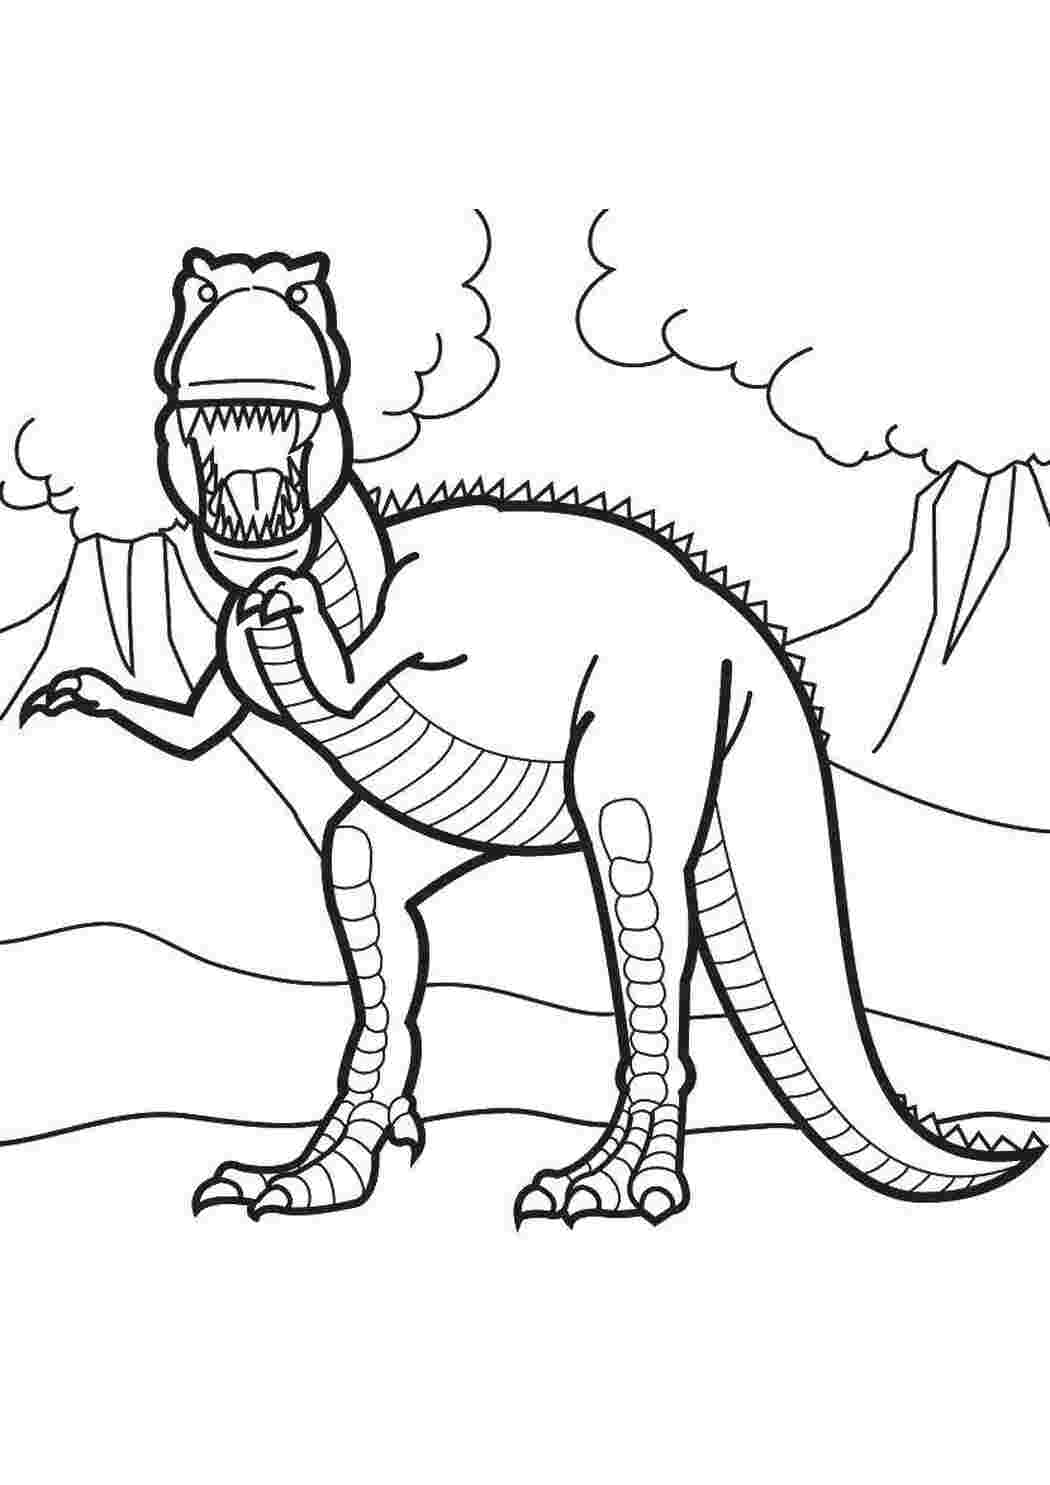 Раскраски динозавры формат а4. Дино рекс раскраска. Терекс динозавры раскраска. Динозавр раскраска для детей. Шонизавр раскраска.